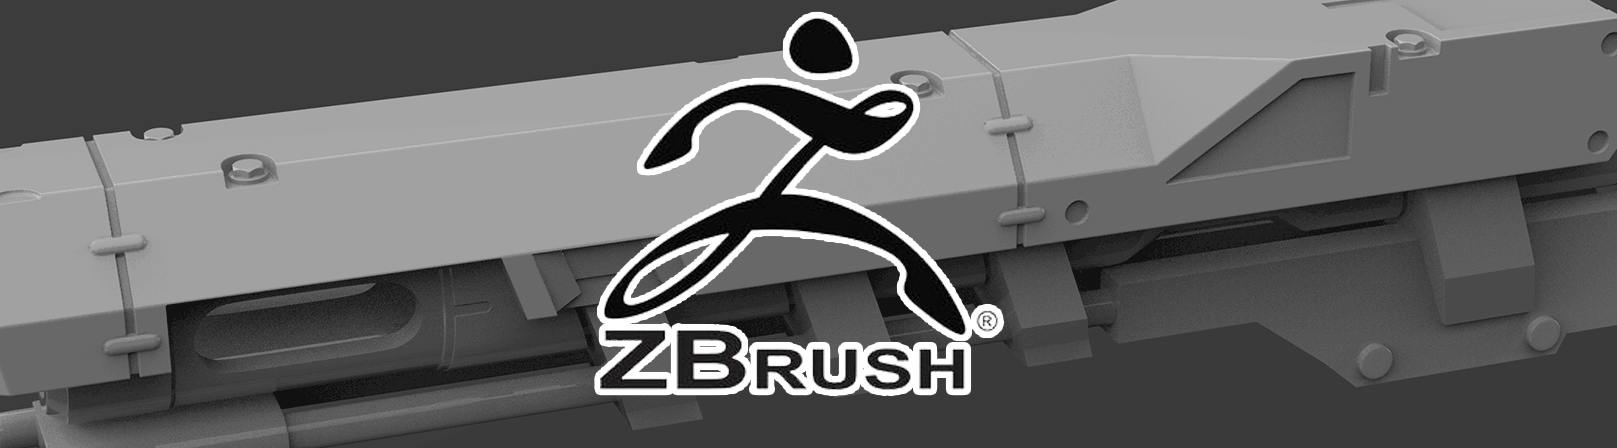 ZBrush Tips